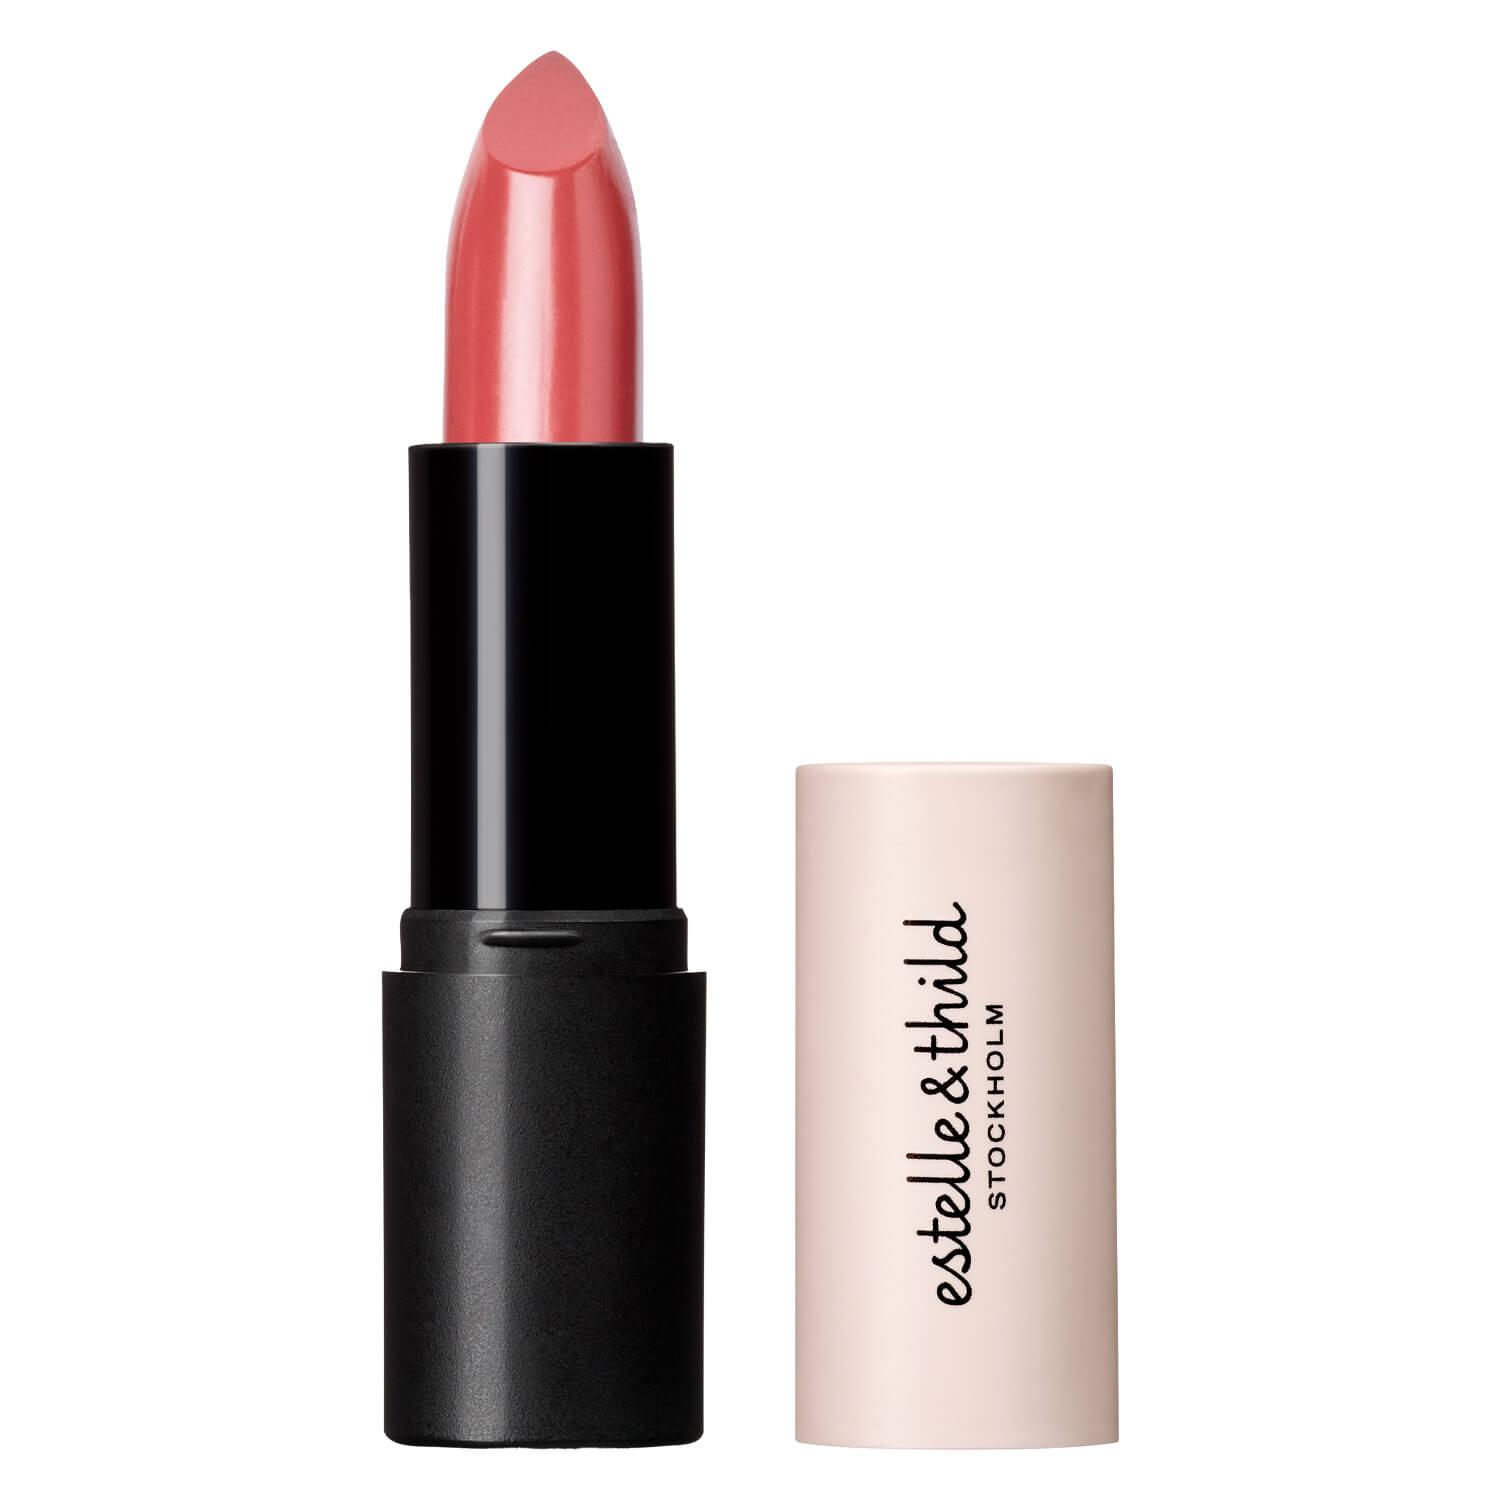 Estelle&Thild Make-Up - Cream Lipstick Magnolia